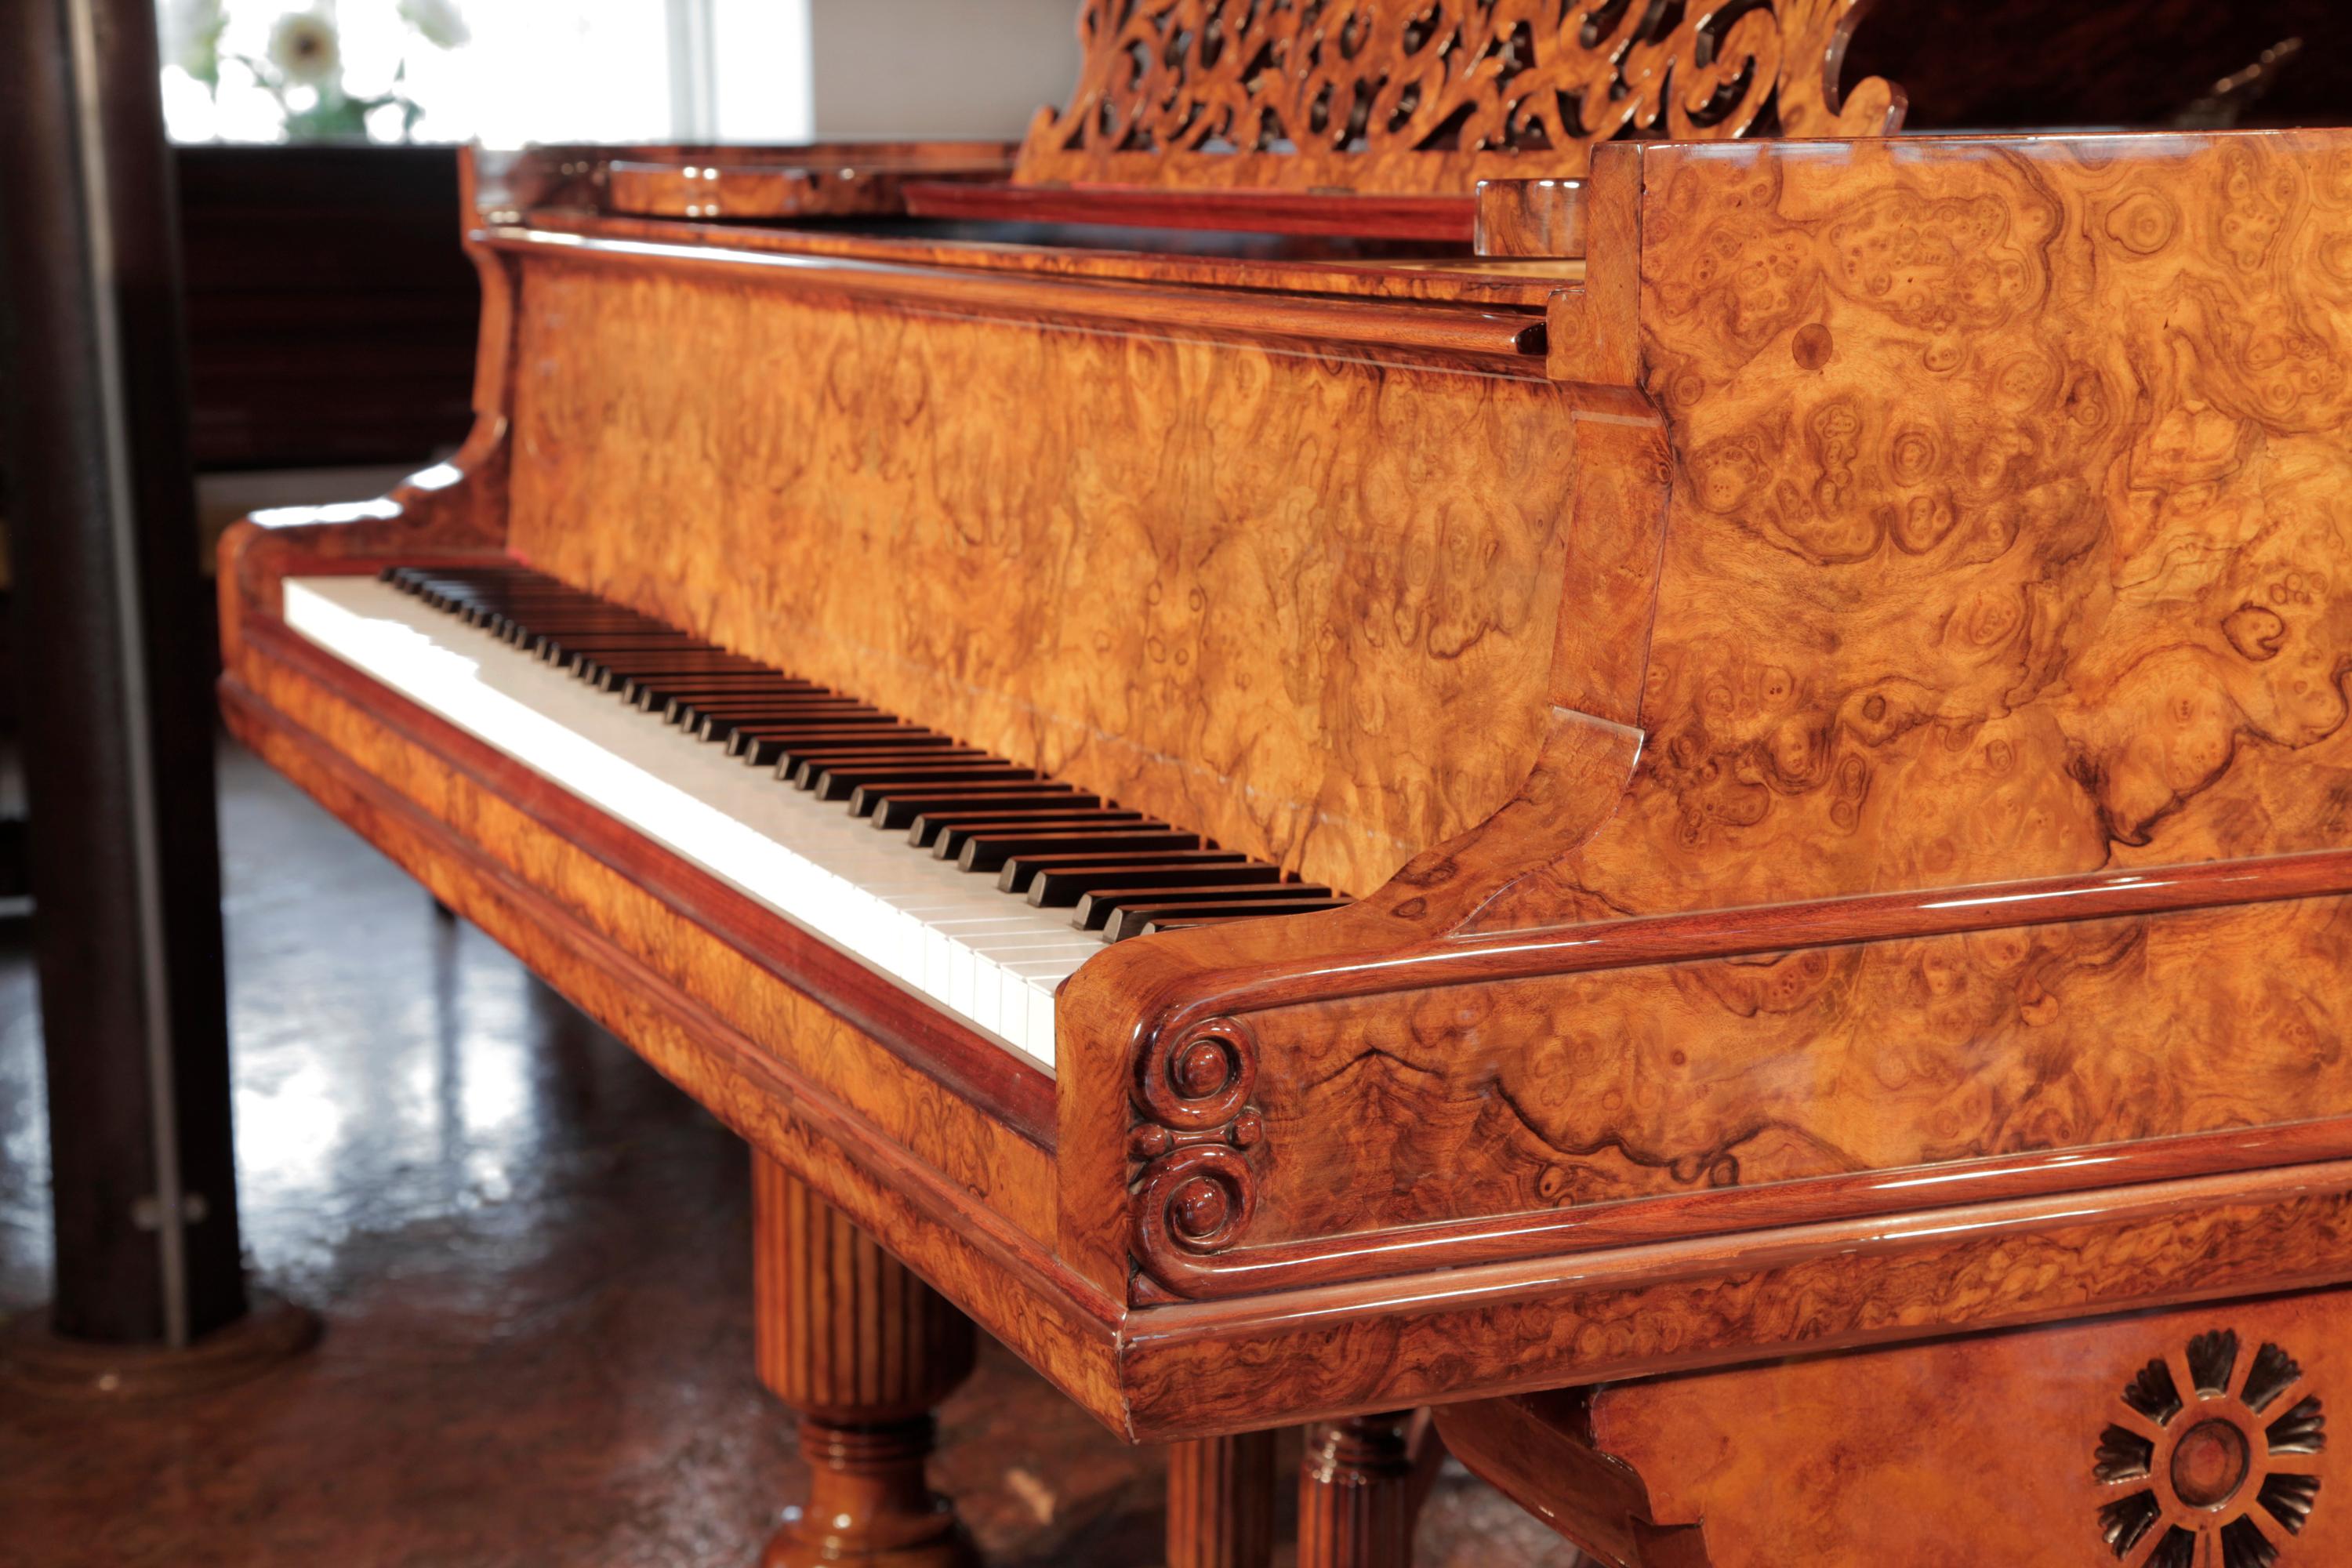 Piano à queue de concert Steinway & Sons, modèle D, reconstruit en 1881. Caisse en ronce de noyer, pupitre filigrané et pieds cannelés en forme de tonneau. Le pupitre est une découpe en forme d'arabesque avec un motif central de lyre. Les pieds du